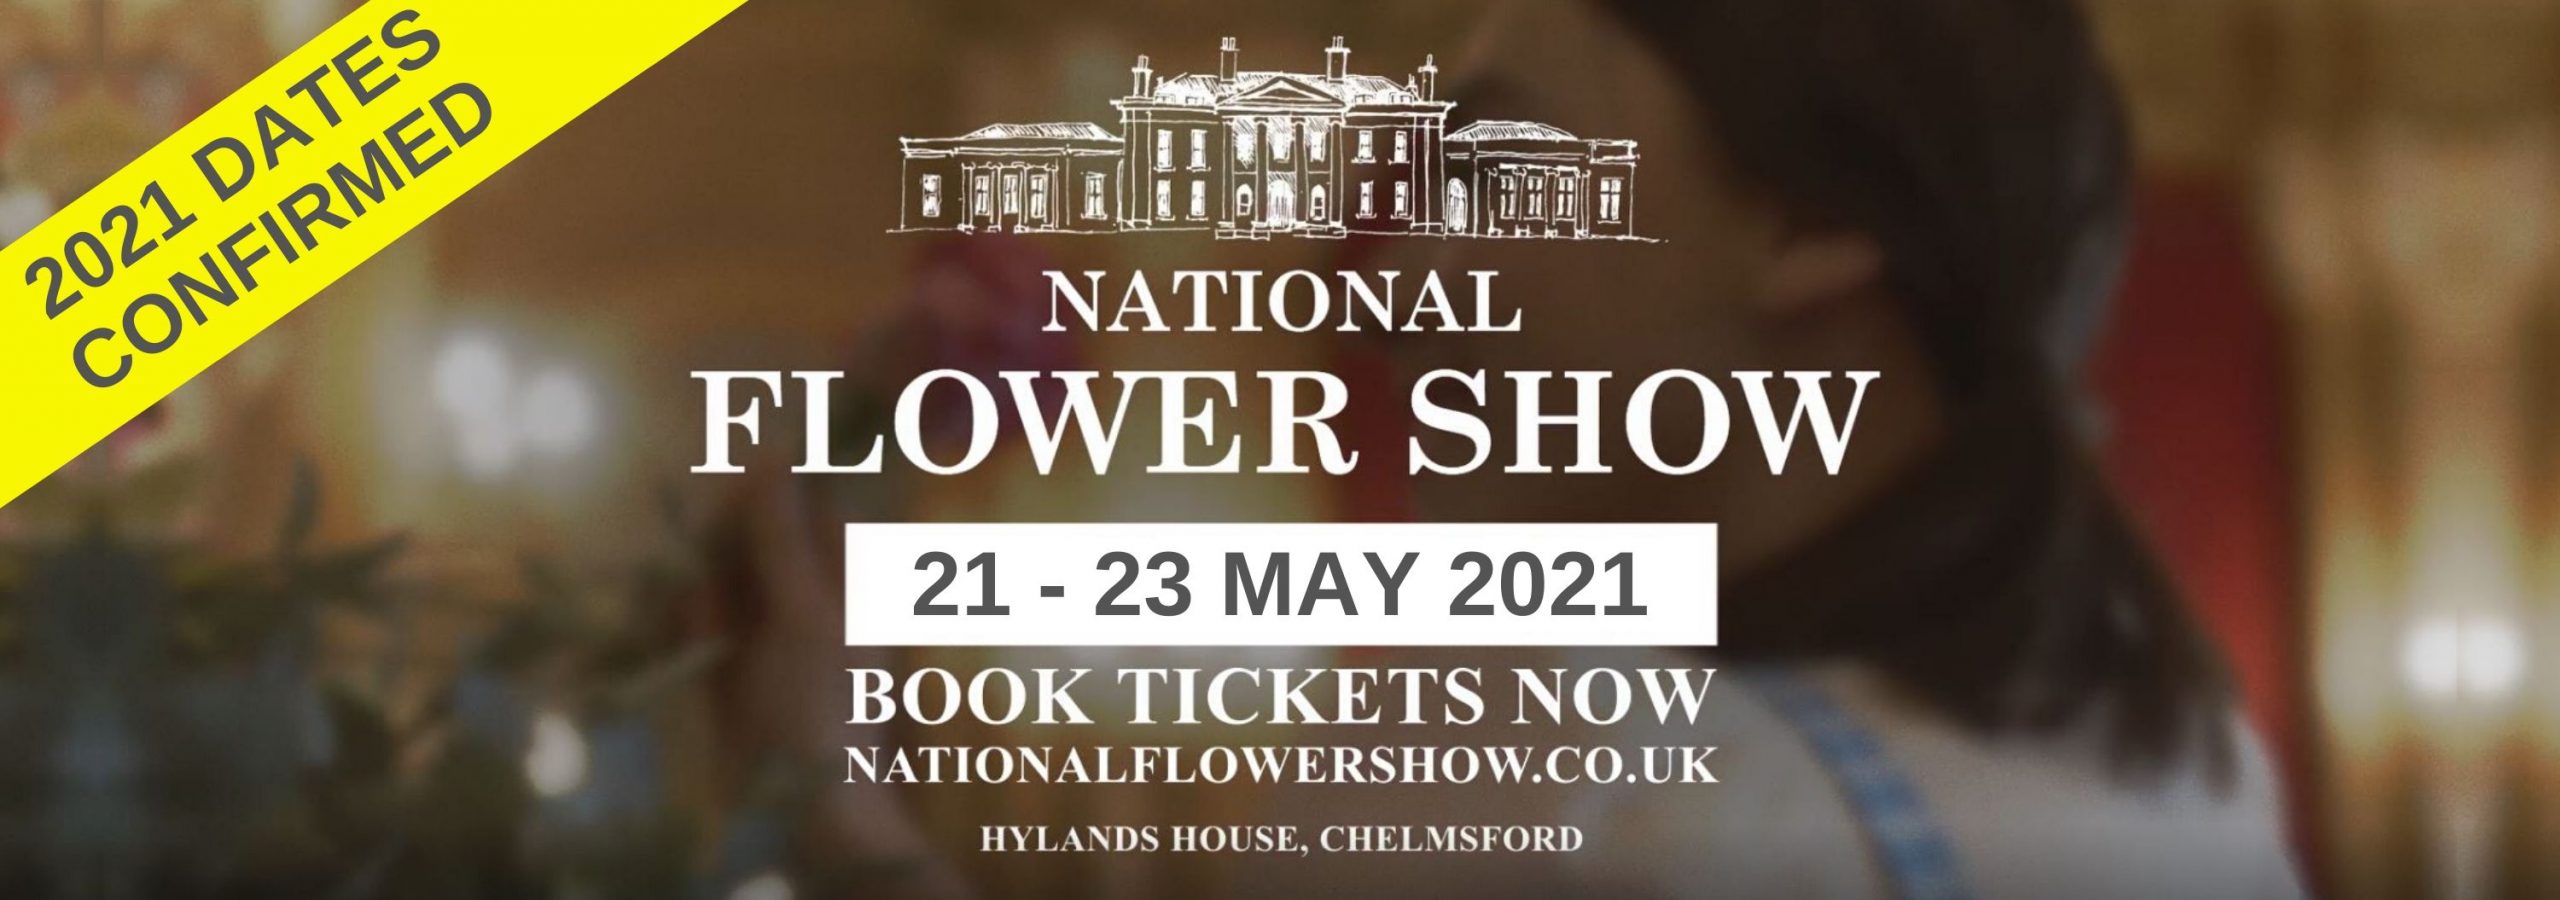 The National Flower Show The National Flower Show